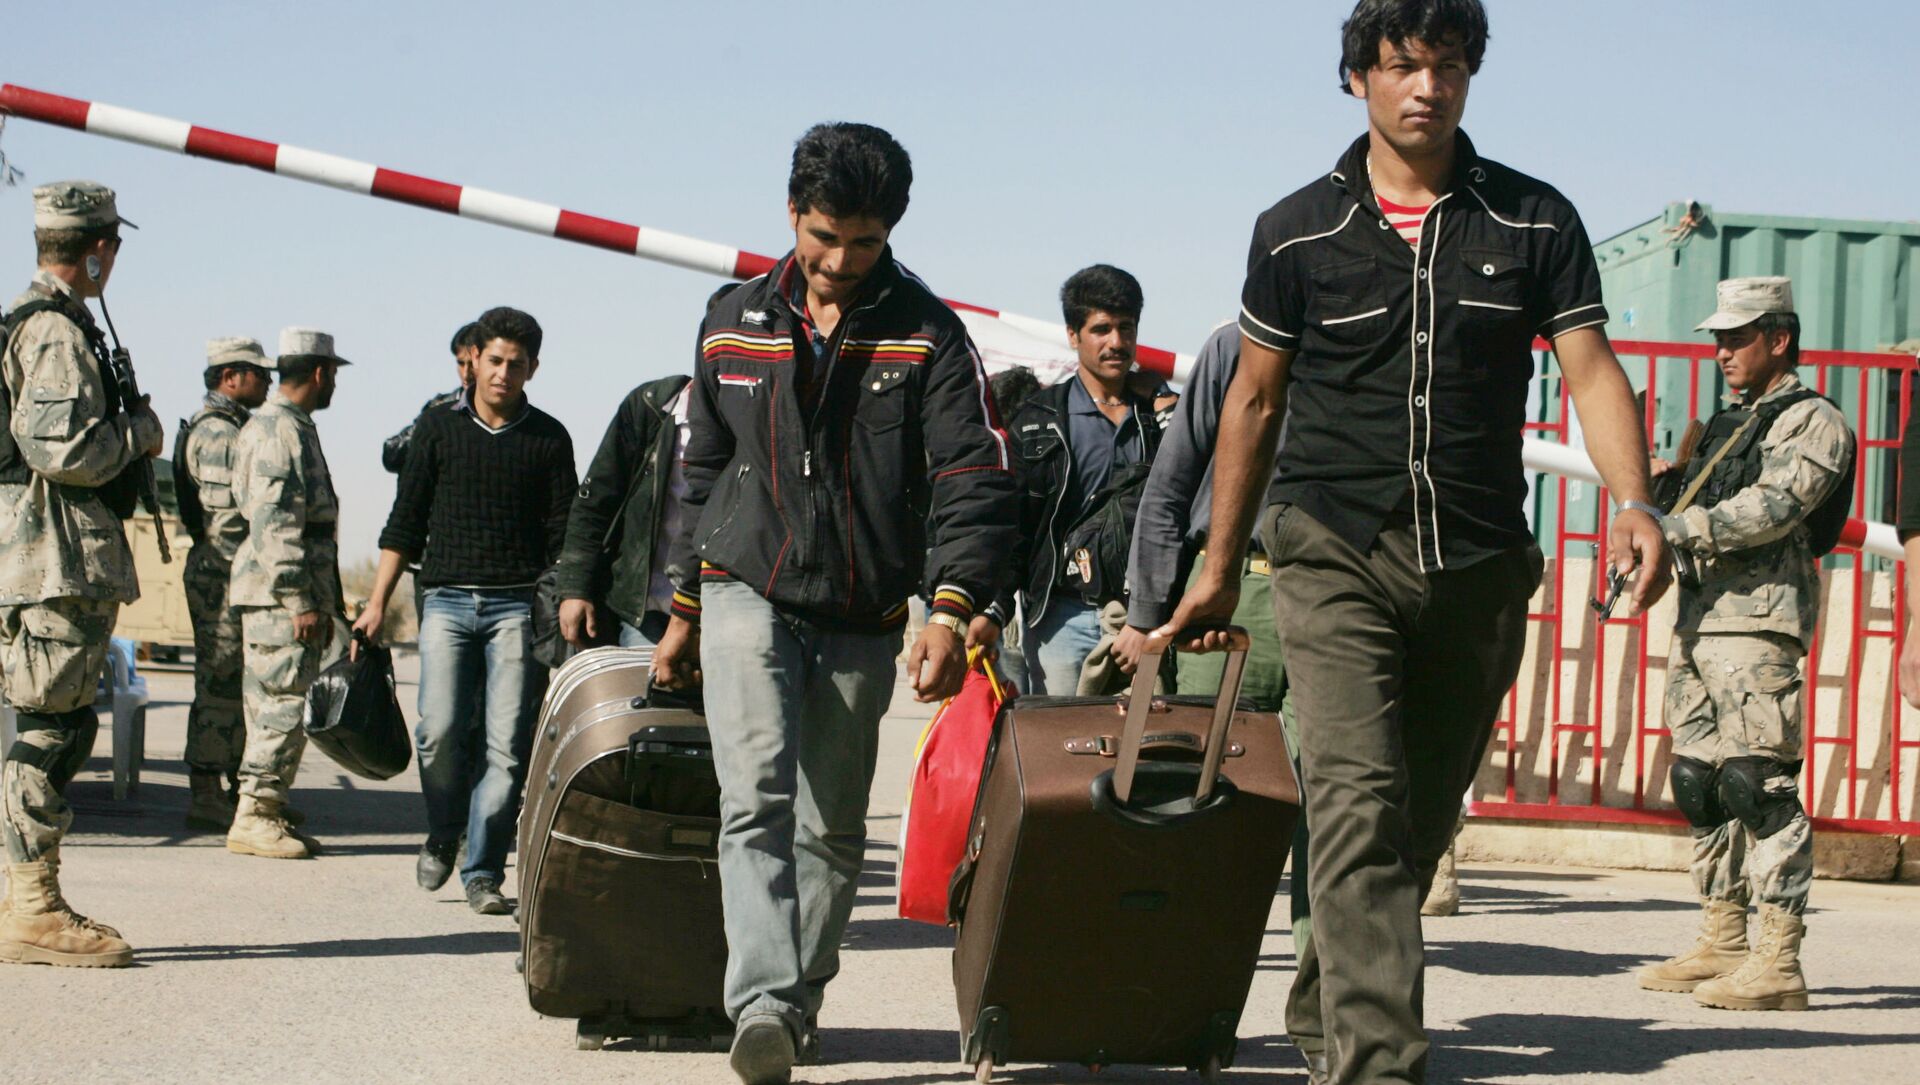 Иностранные граждане составляют 3 4. Афганские беженцы в Таджикистане. Мигранты из Афганистана. Афганский мигранты в Таджикистане.